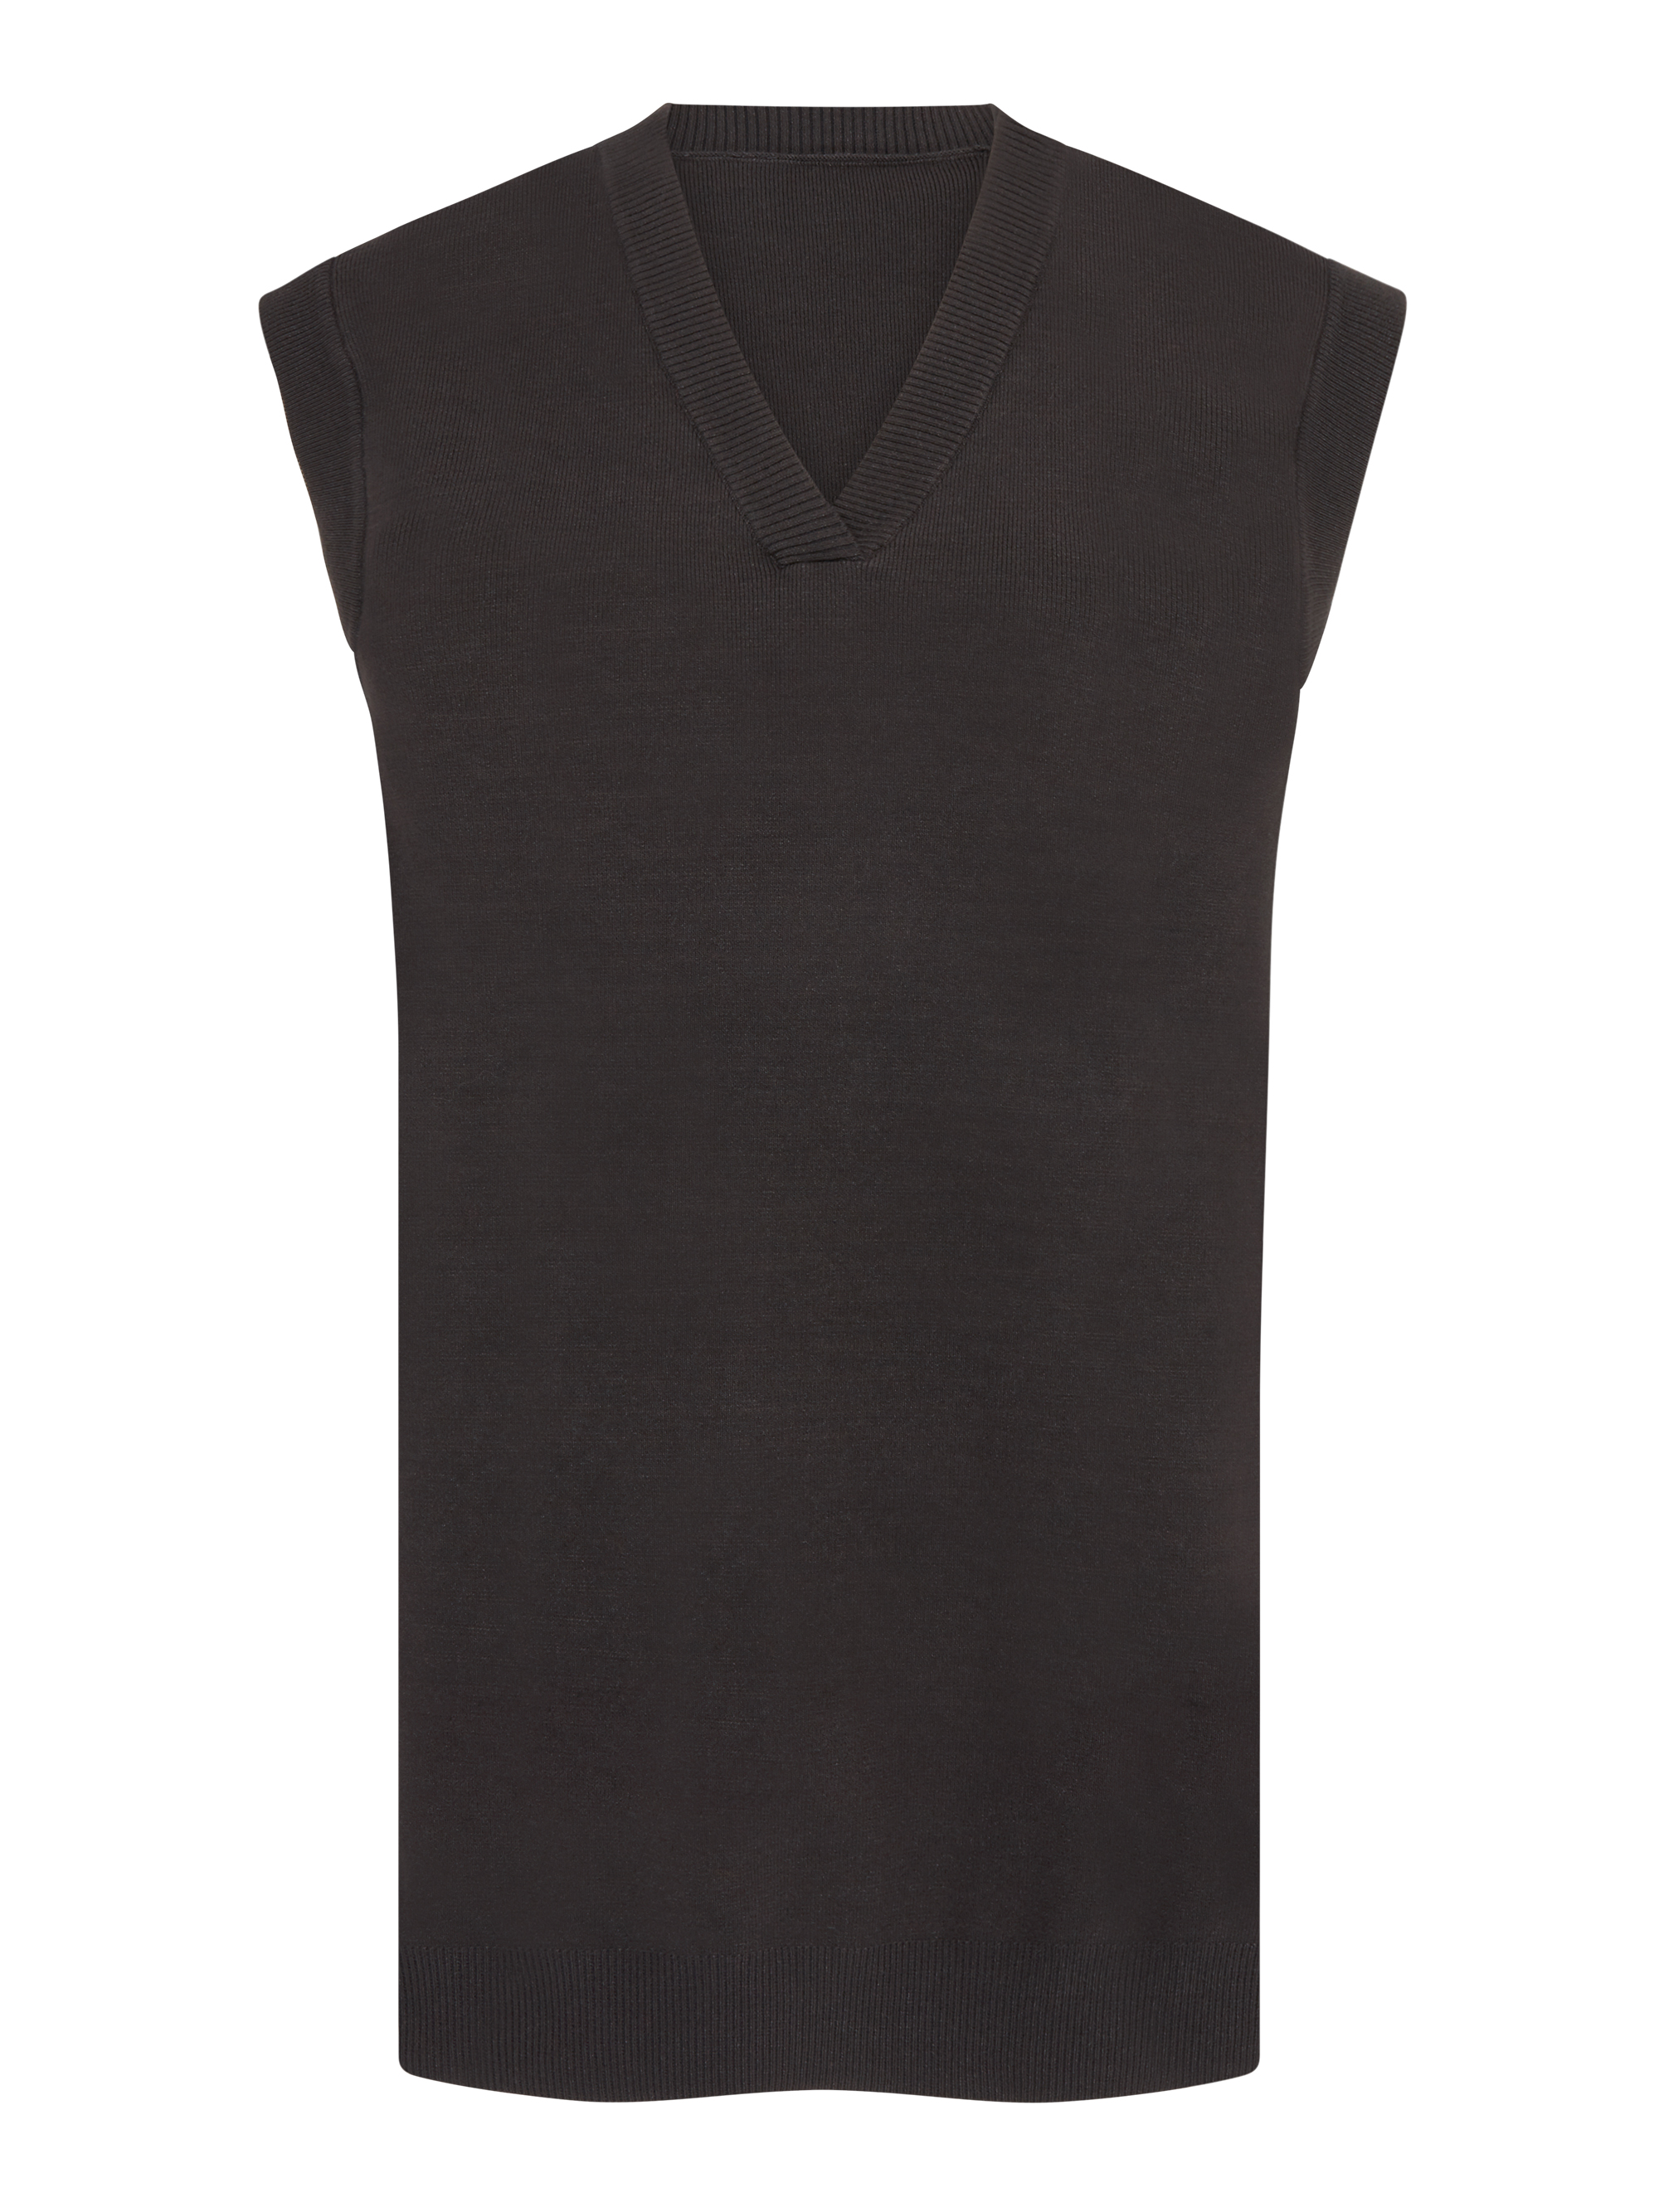 Kobiety Odzież Aligne Sweter Eloise w kolorze Czarnym 